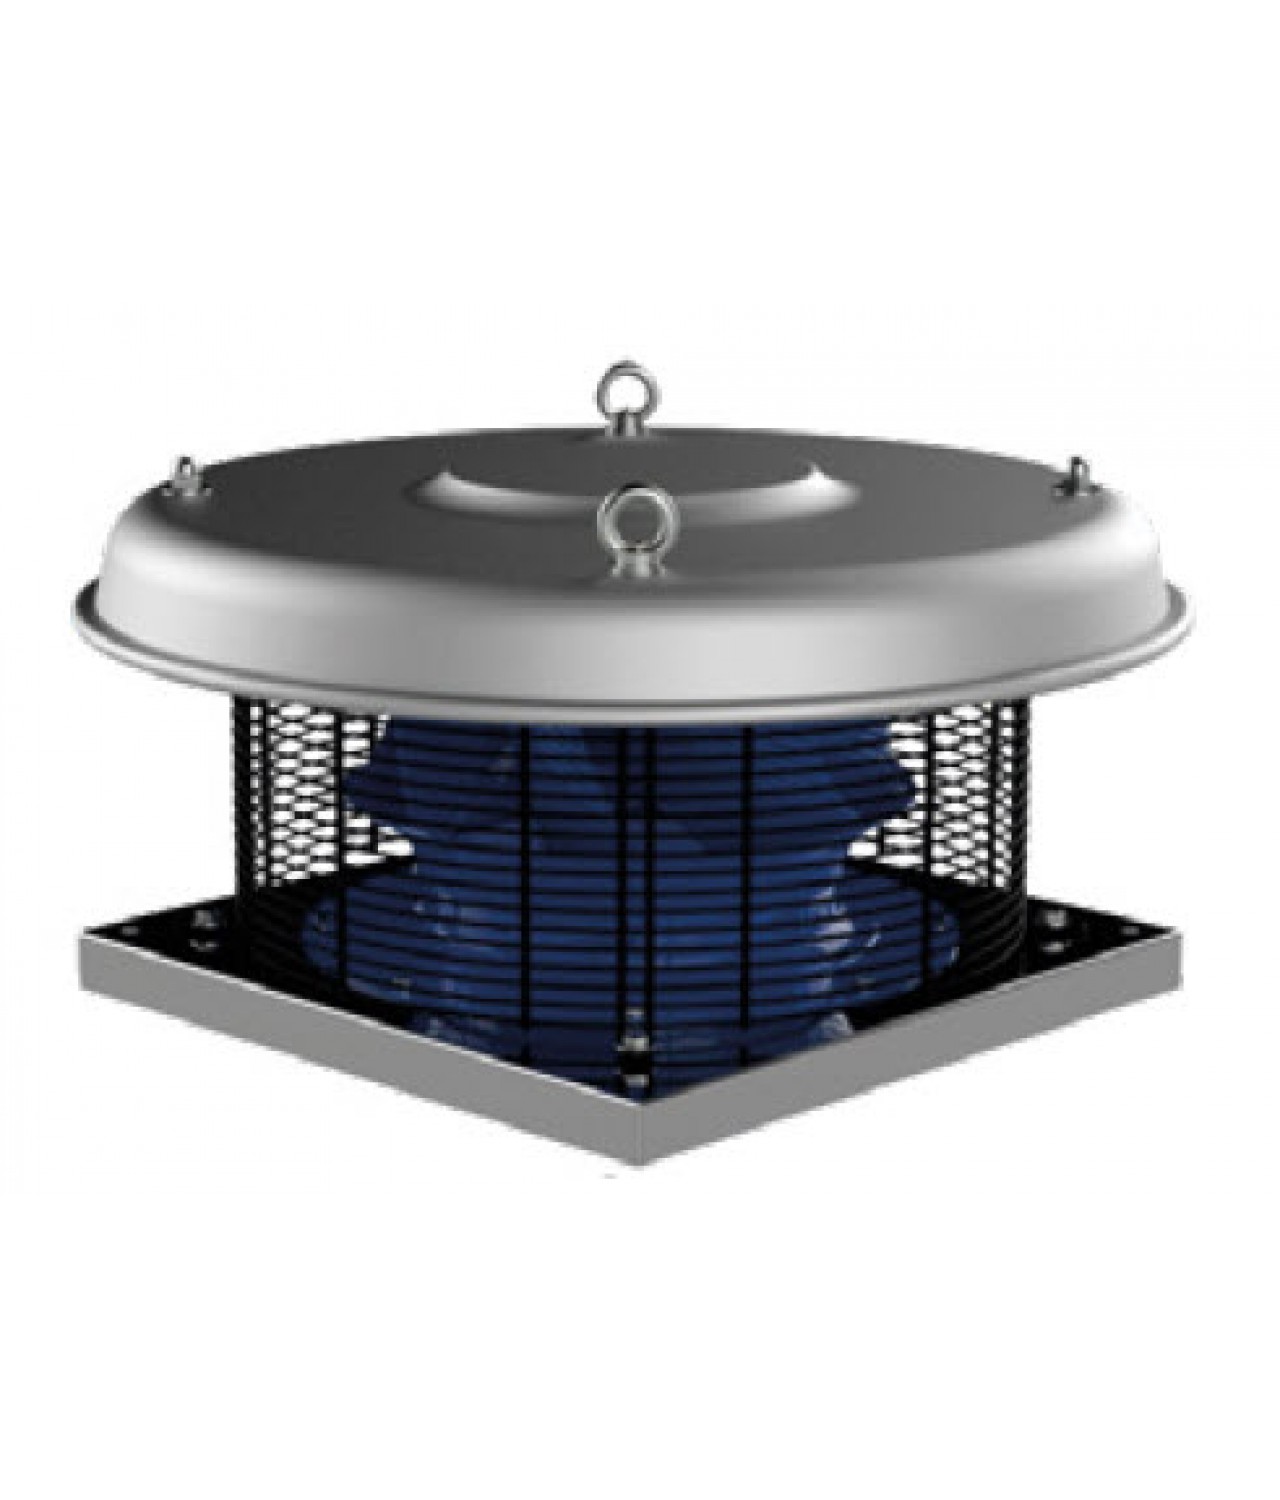 Itin kompaktiški išcentriniai stoginiai ventiliatoriai su horizontaliu oro išmetimu REA ≤5500 m³/h